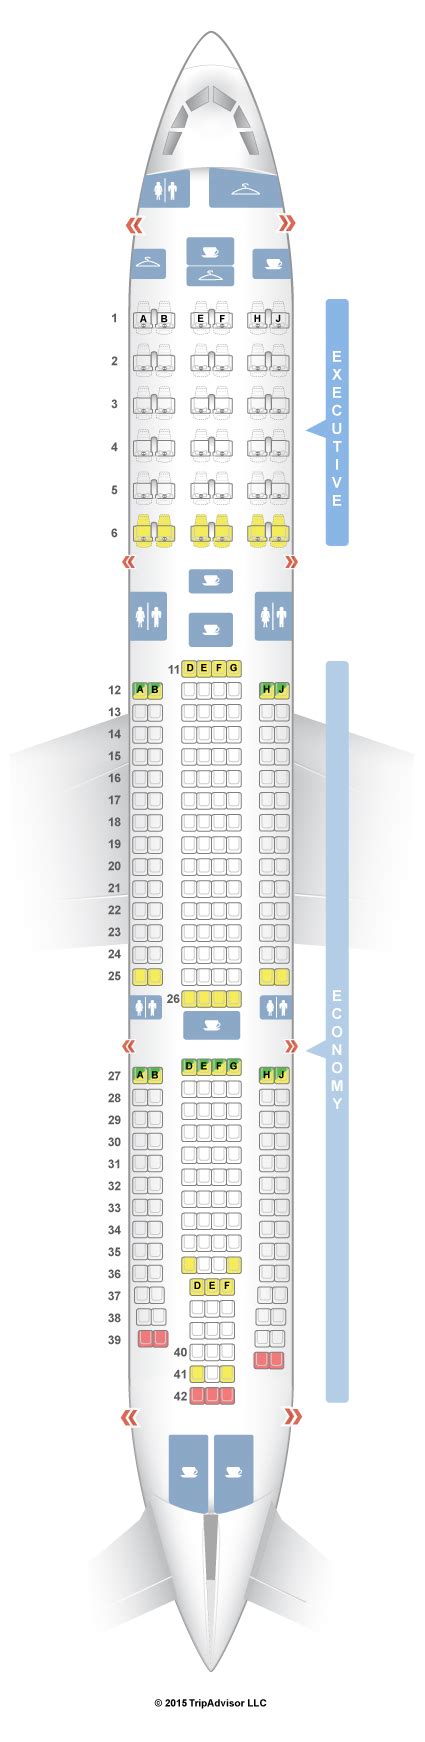 Seatguru Seat Map Tap Portugal Airbus A340 300 343